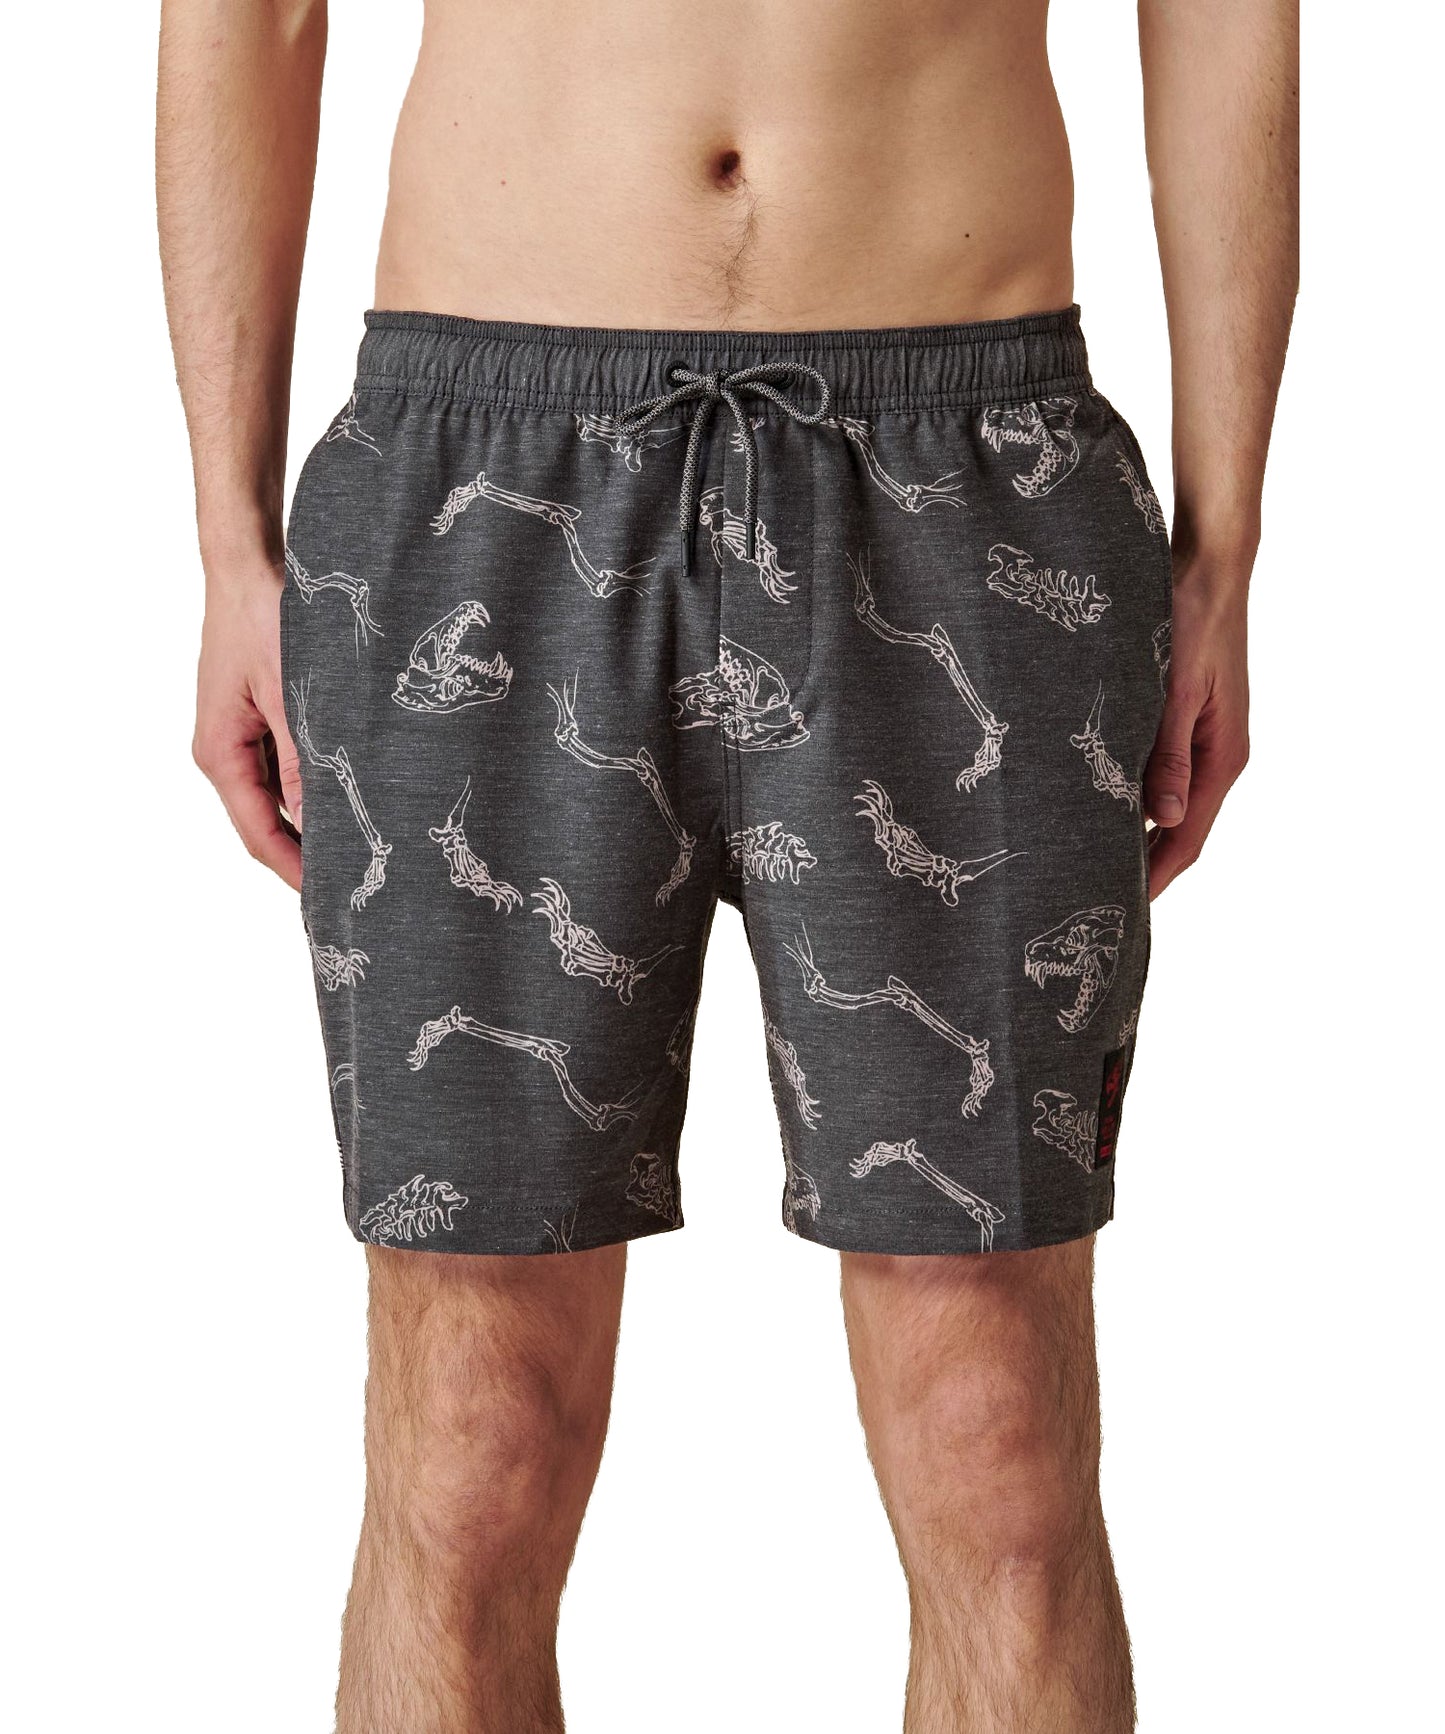 globe-bañador-dion angus-grey-pantalon de playa color gris-cintura elástica con cordón-mezcla algodón y poliéster-estampado d e-dinosaurio-reciclado.